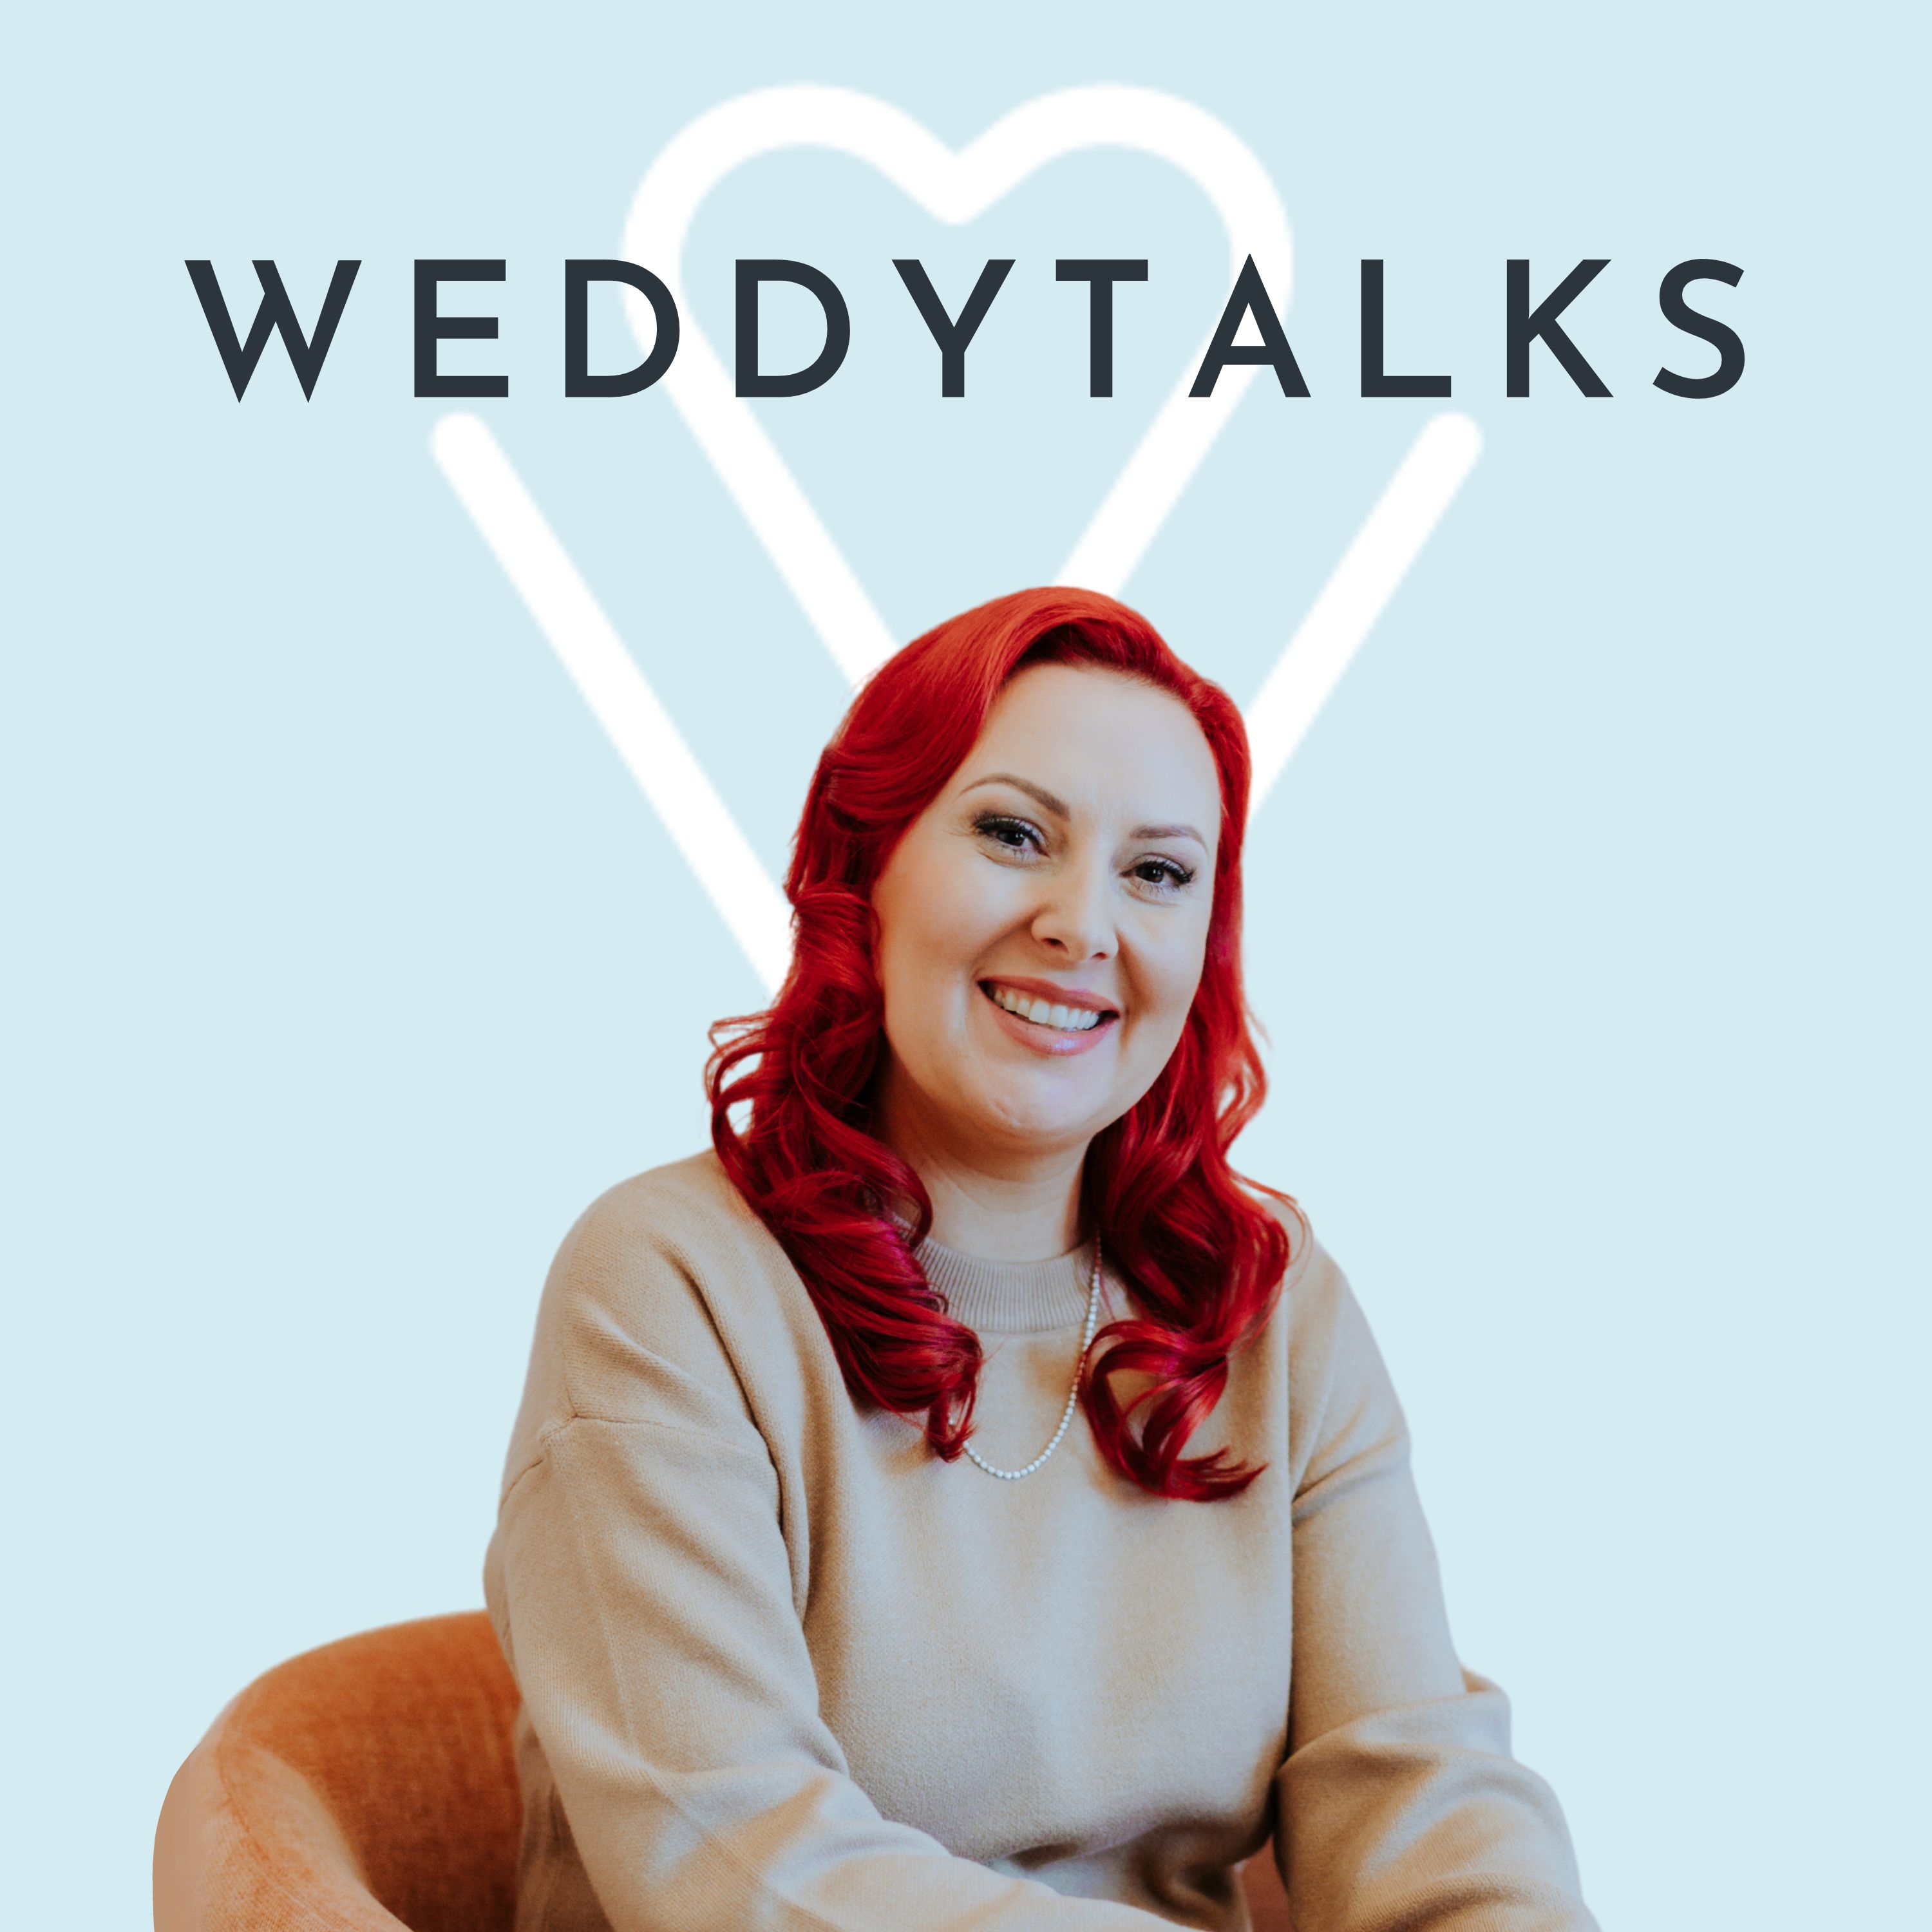 WeddyTalks Host und Hochzeitsexpertin Svenja Schirk